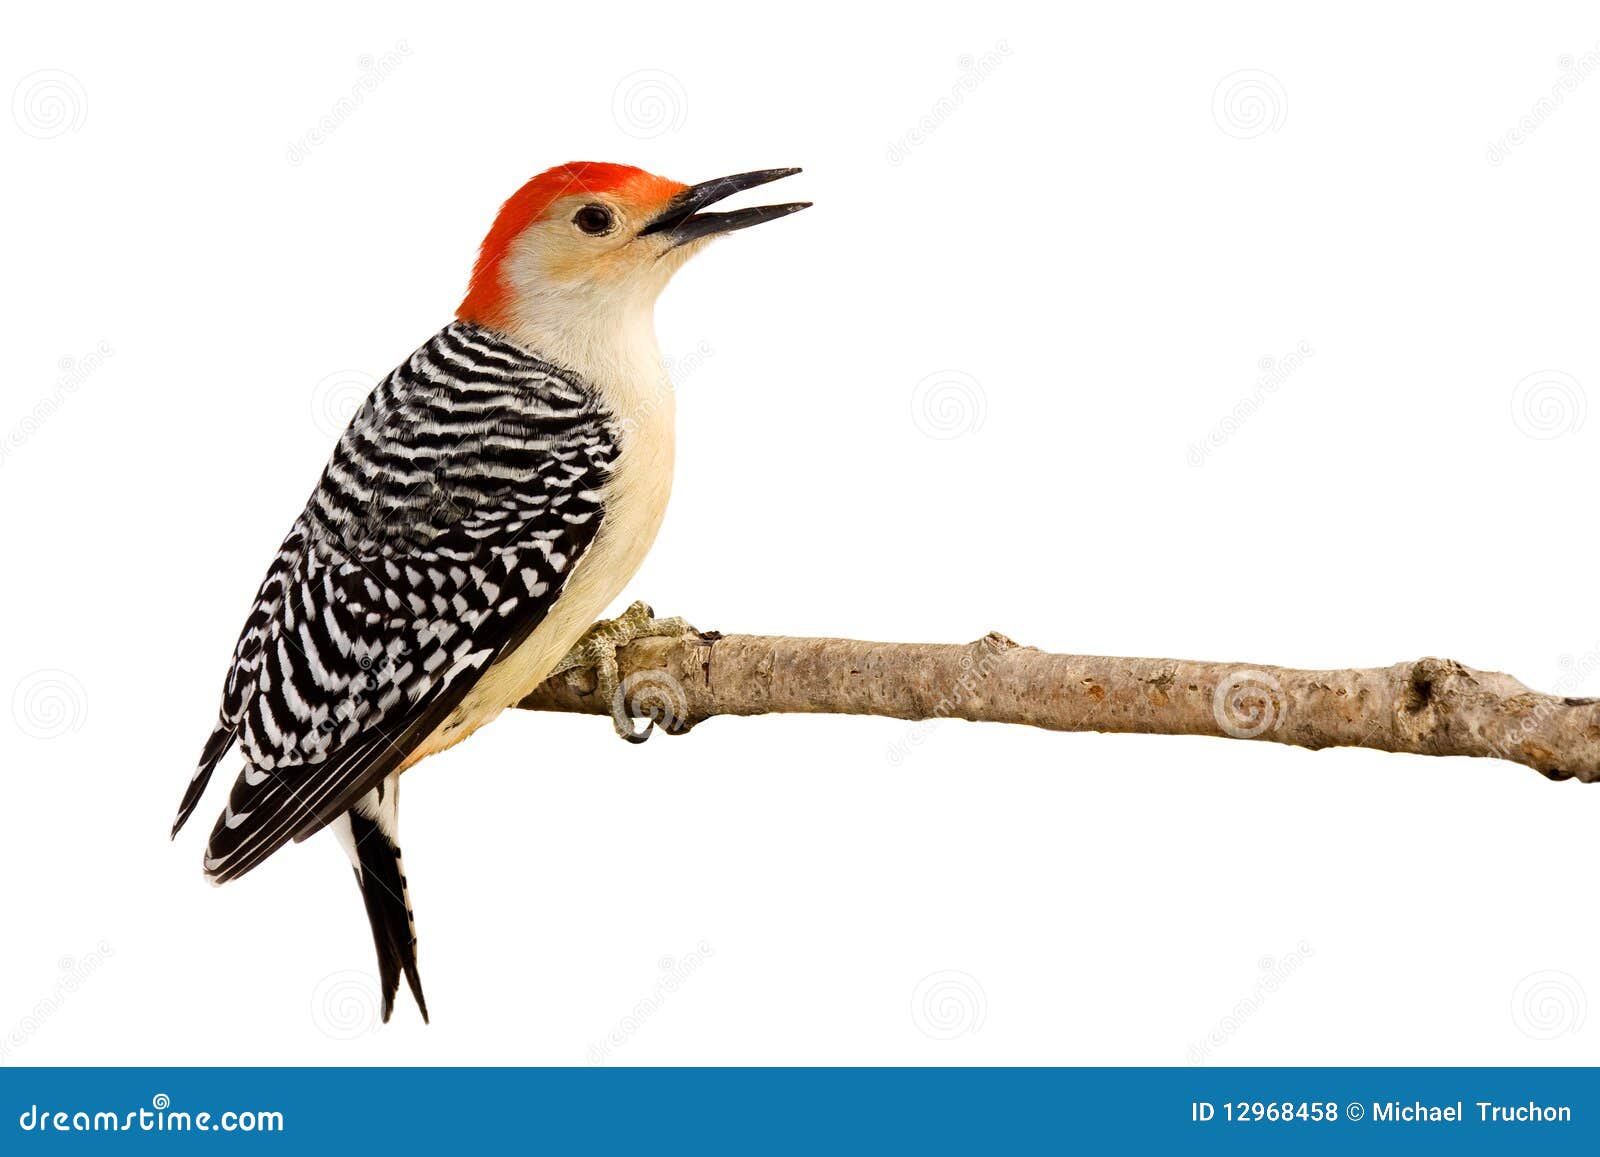 profile of red-bellied woodpecker with beak open